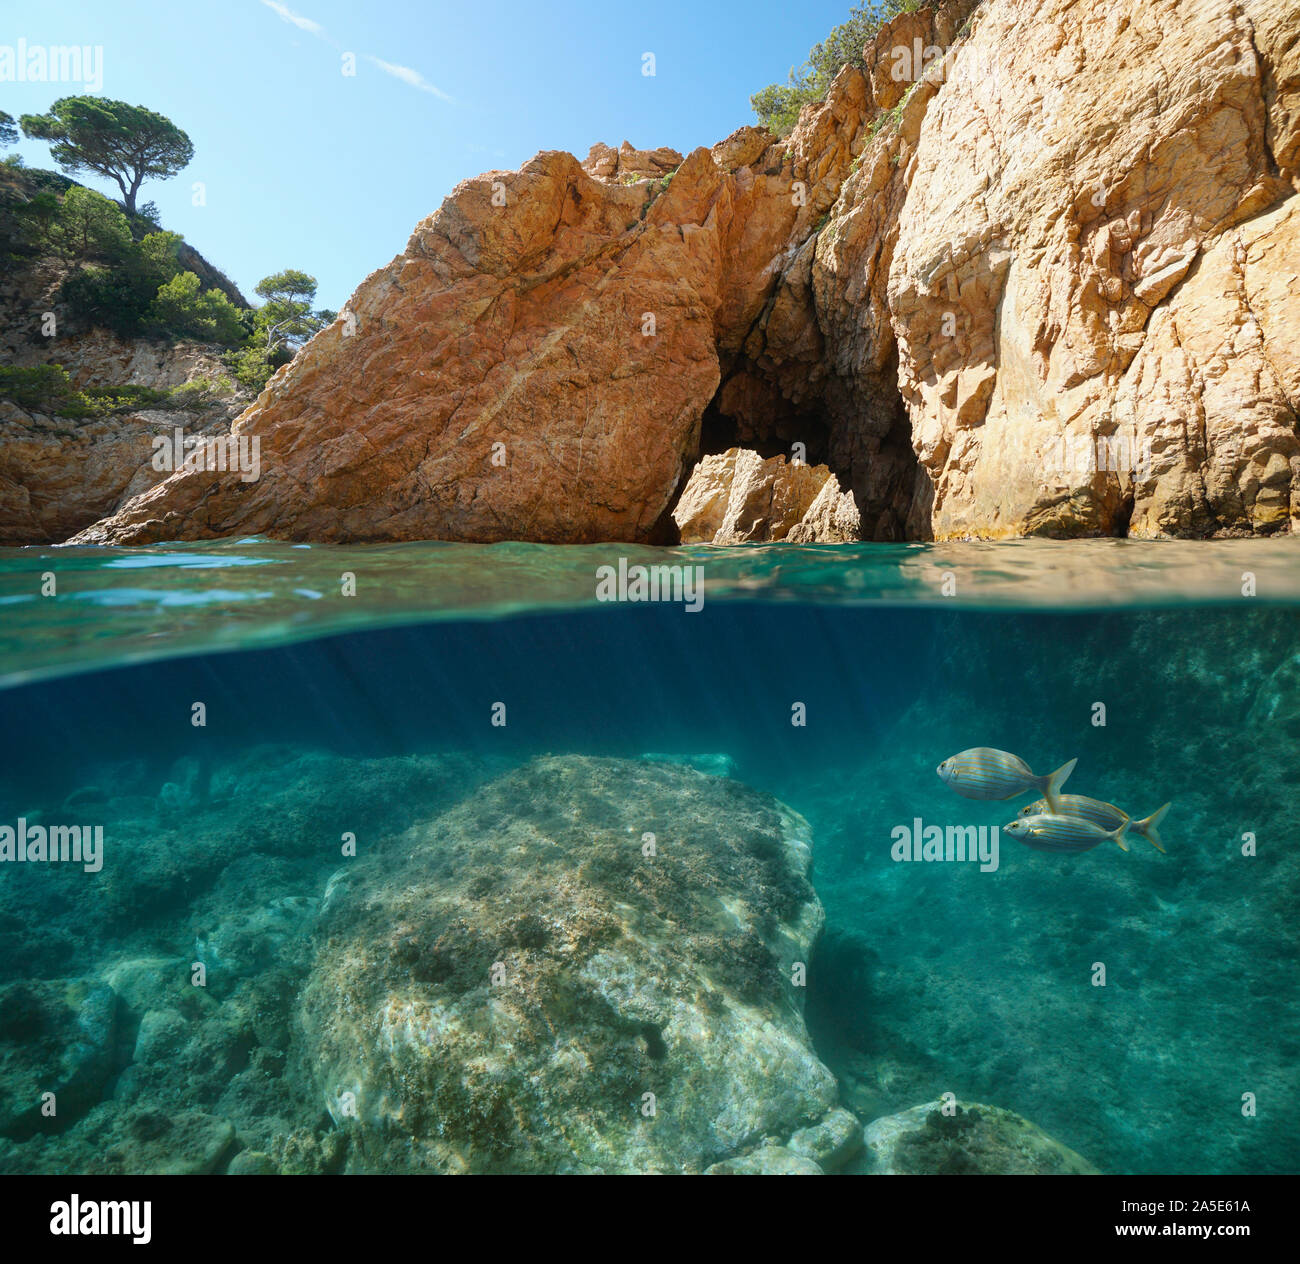 Felsige Küste mit Natural Arch, geteilte Ansicht über und unter Wasser, Mittelmeer, Spanien, Costa Brava, Katalonien, Palamos, Cala Foradada Stockfoto